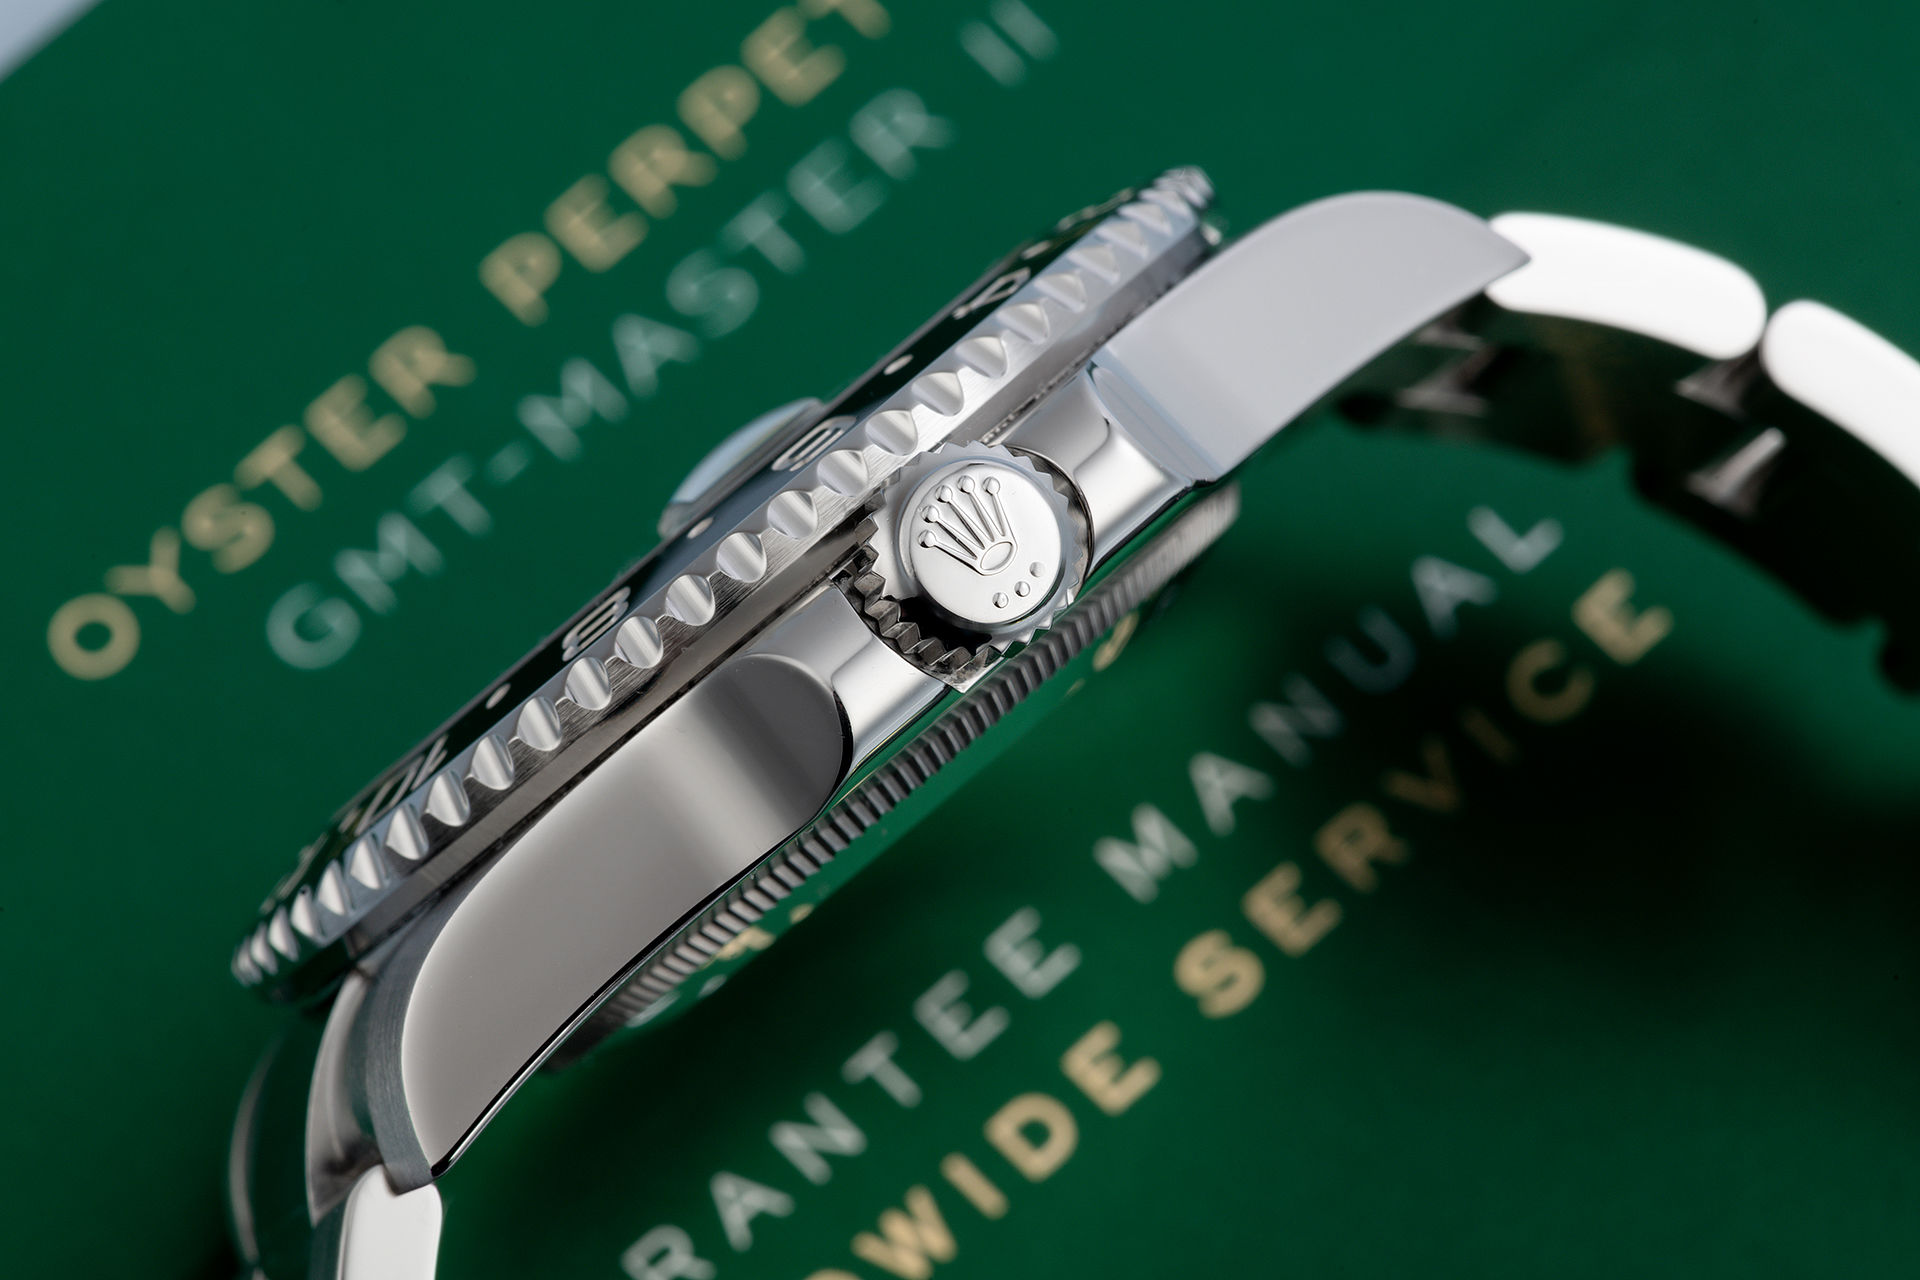 ref 116710LN | Cerachrom 'Five Year Warranty' | Rolex GMT-Master II